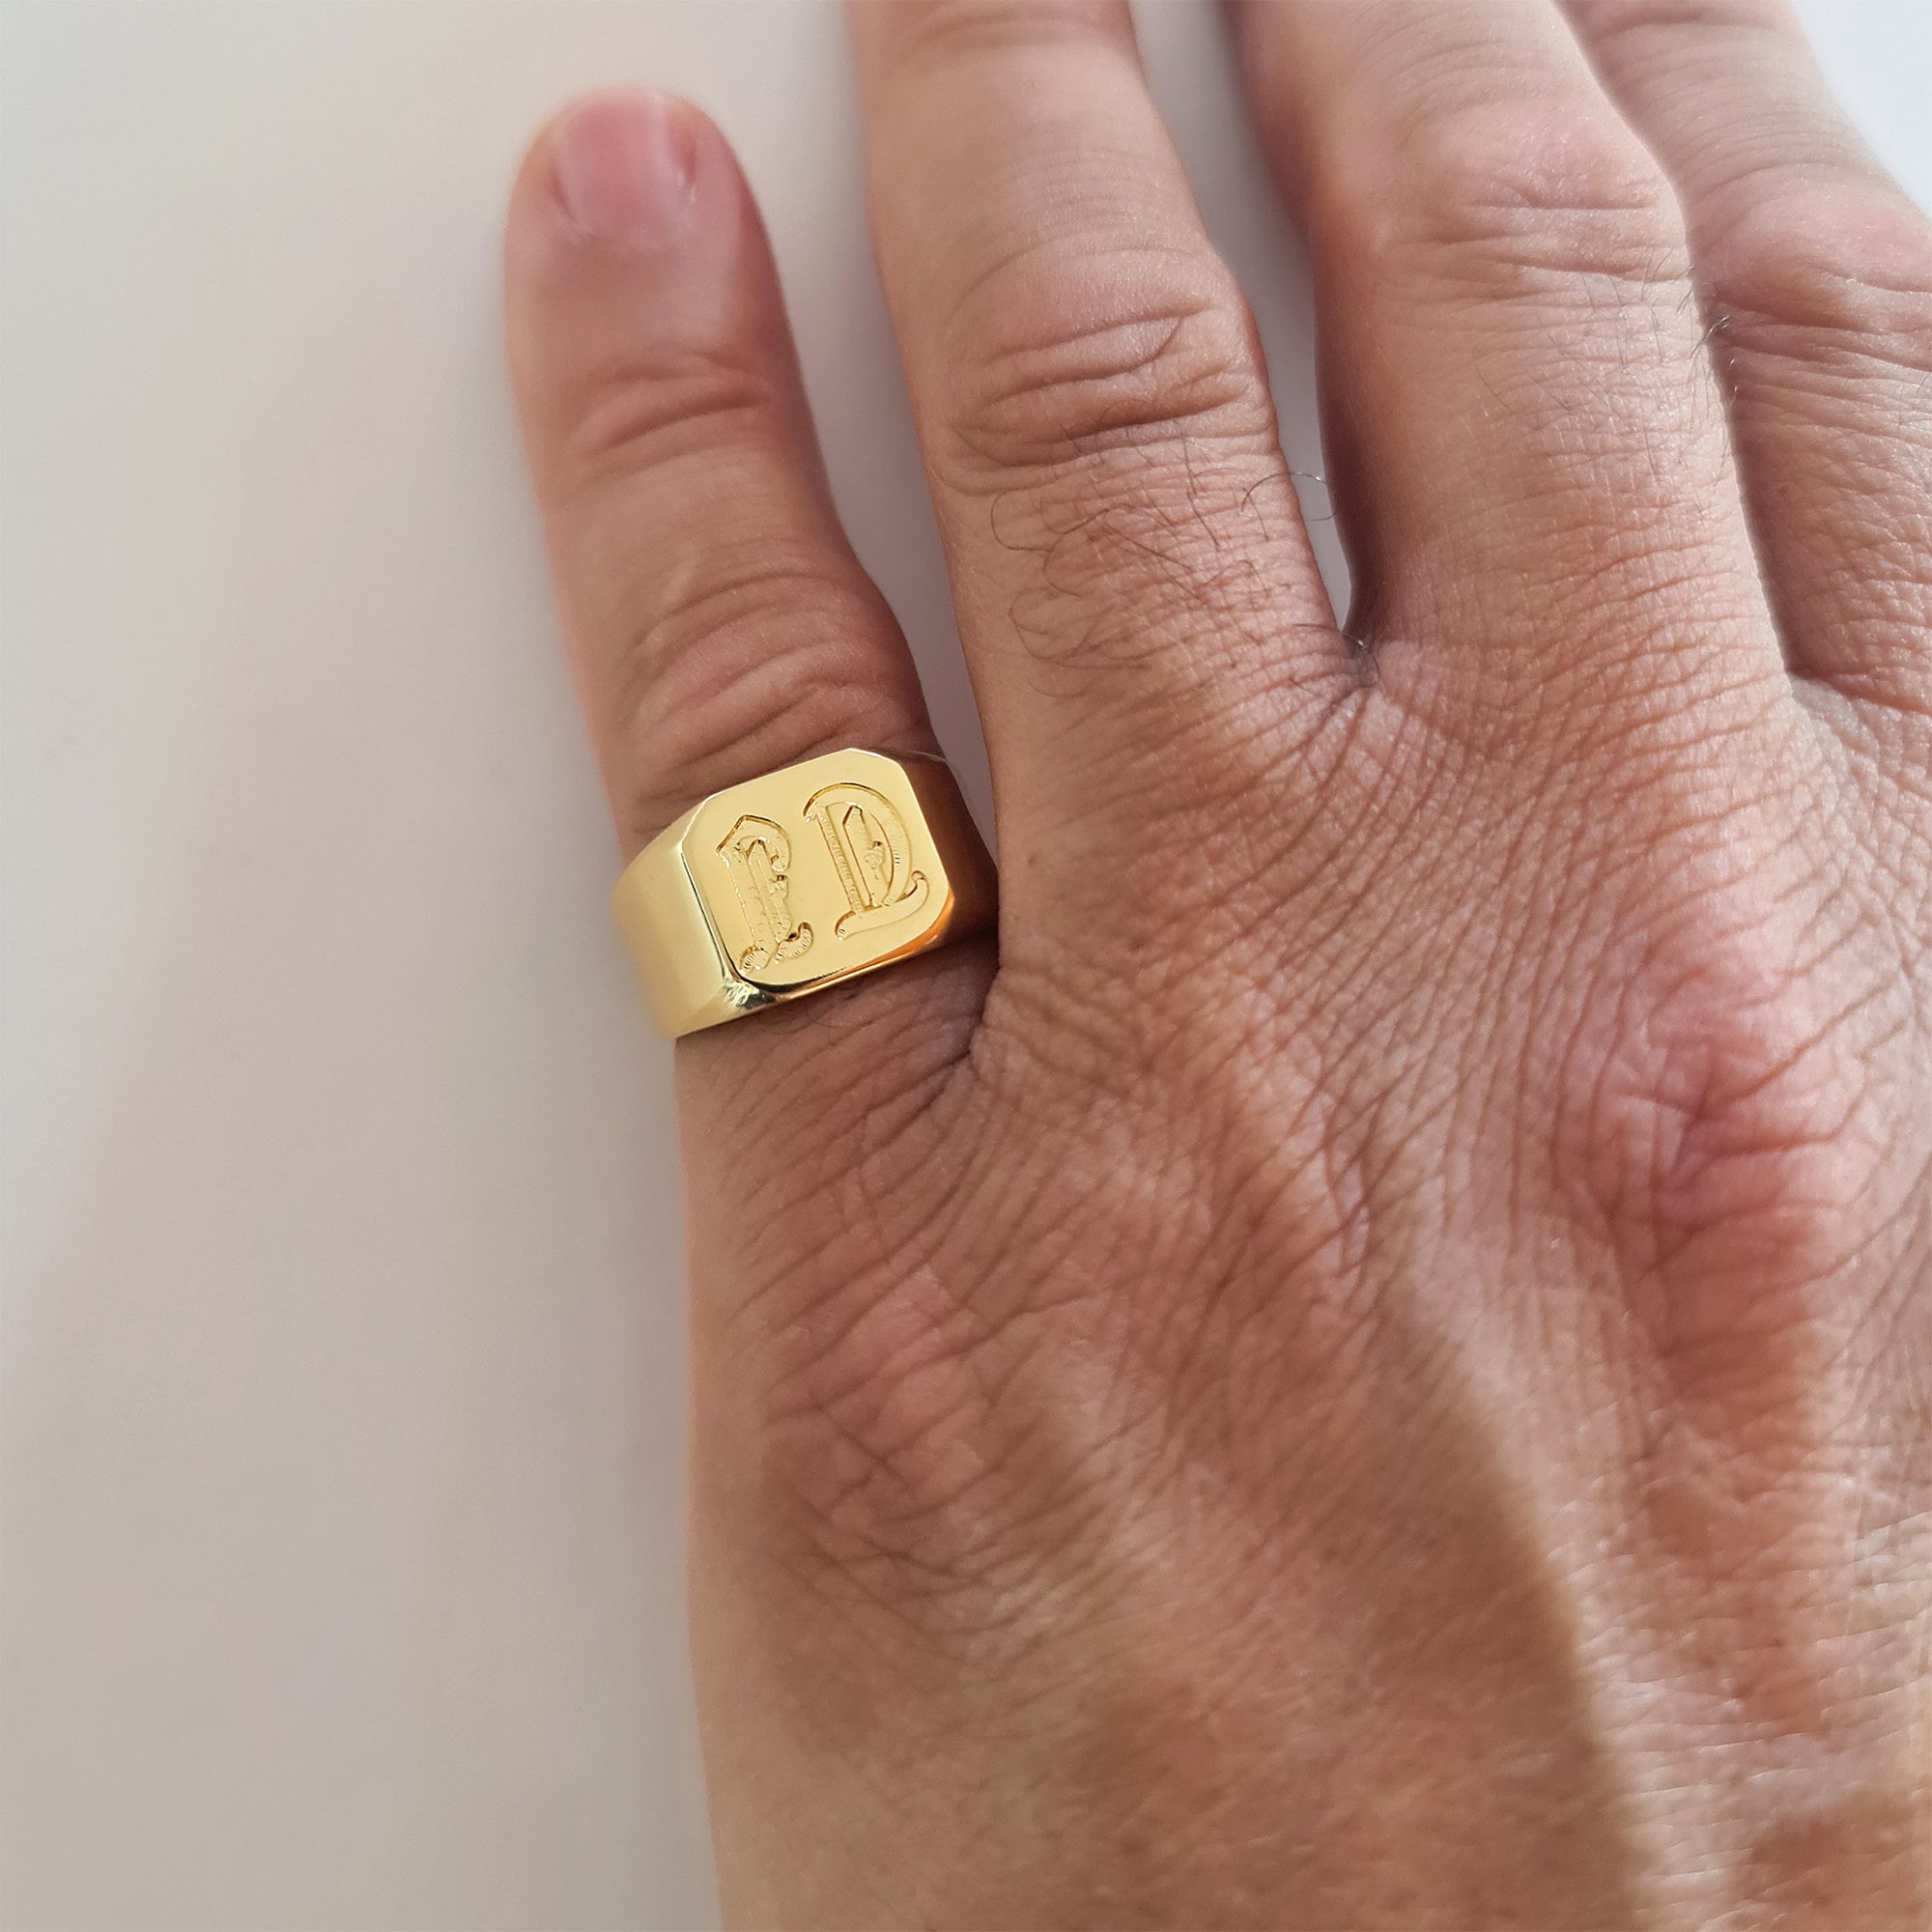 Engraved Ring Black Signet Ring Signet Ring for Men Men's Pinky Ring Custom Rings Sieraden Ringen Zegelringen Personalized 